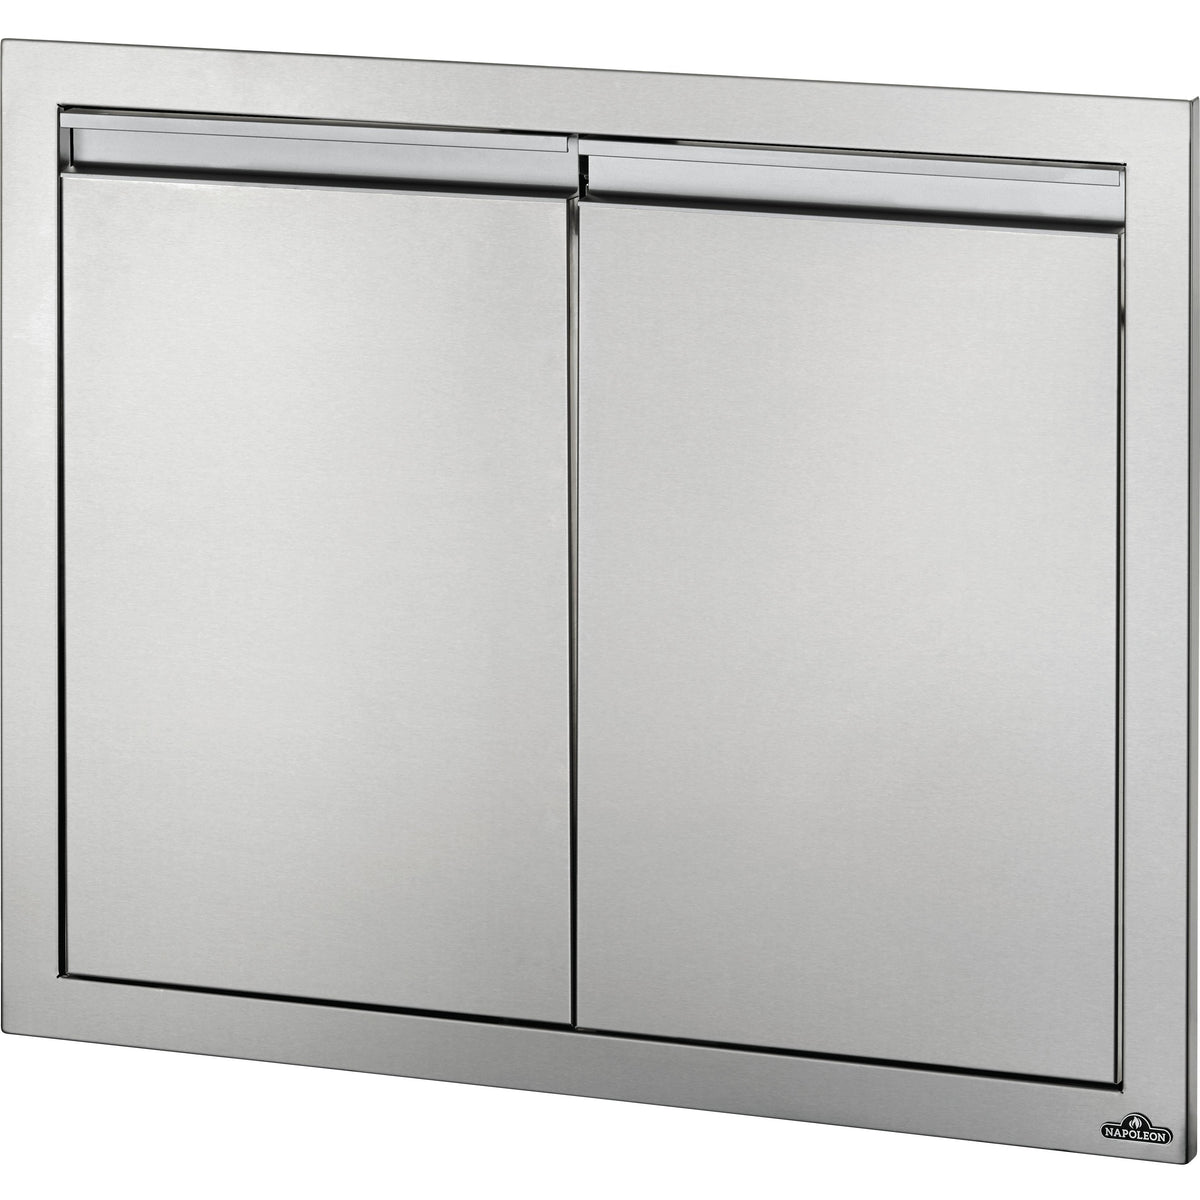 Outdoor Kitchen Components Access Doors BI-3024-2D IMAGE 1